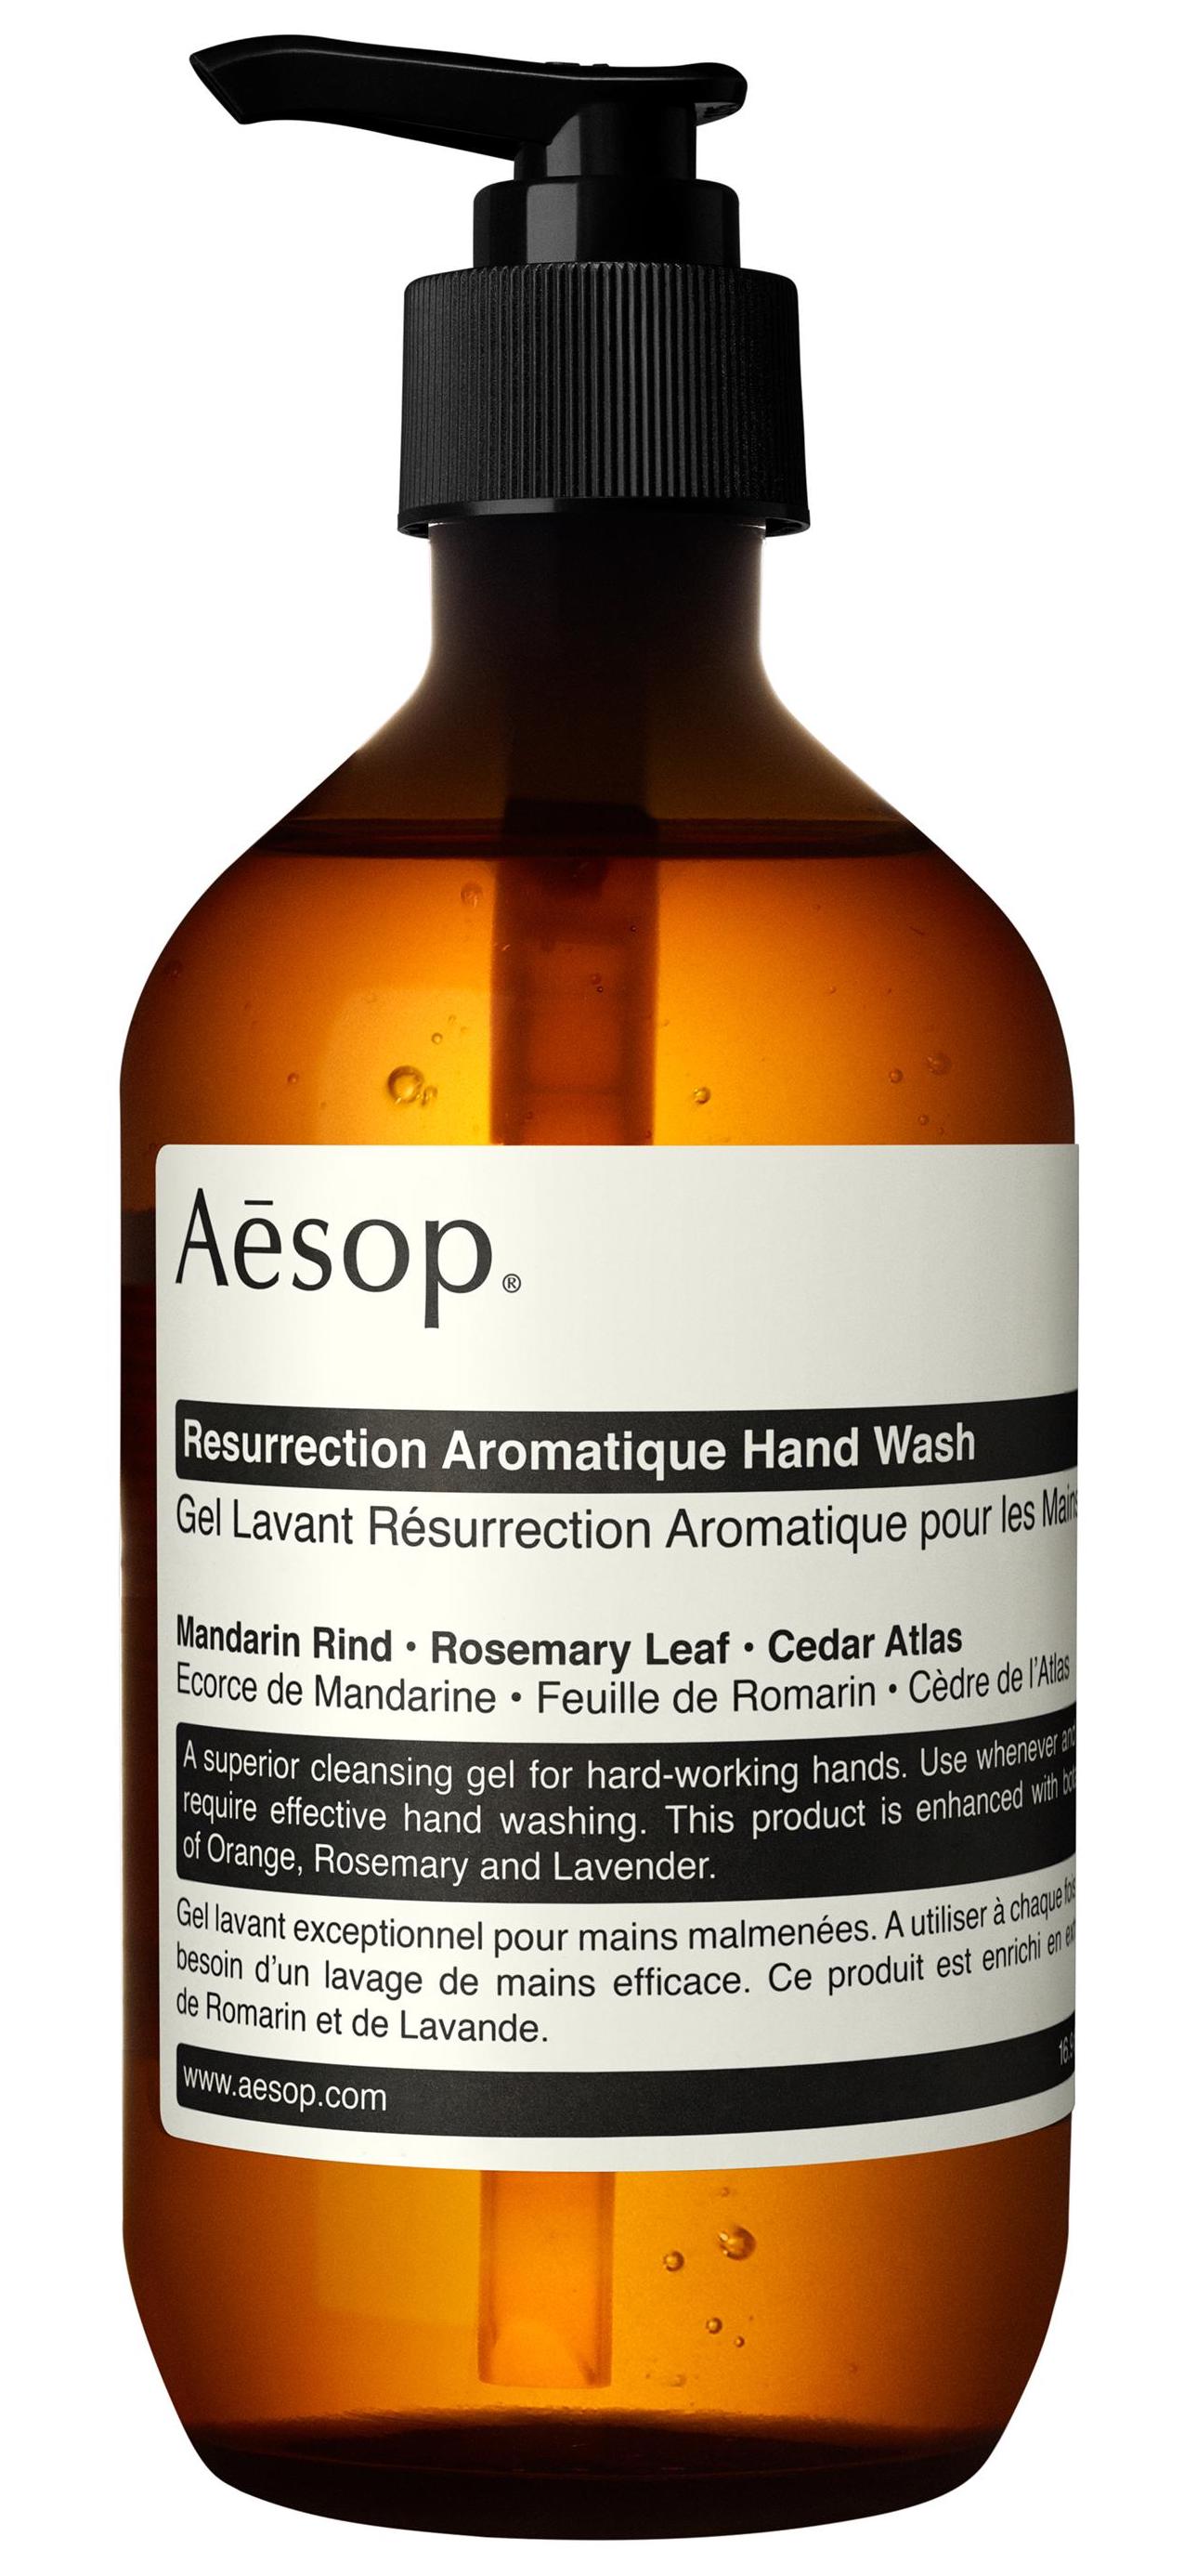 Resurrection Aromatique Hand Wash by Aesop